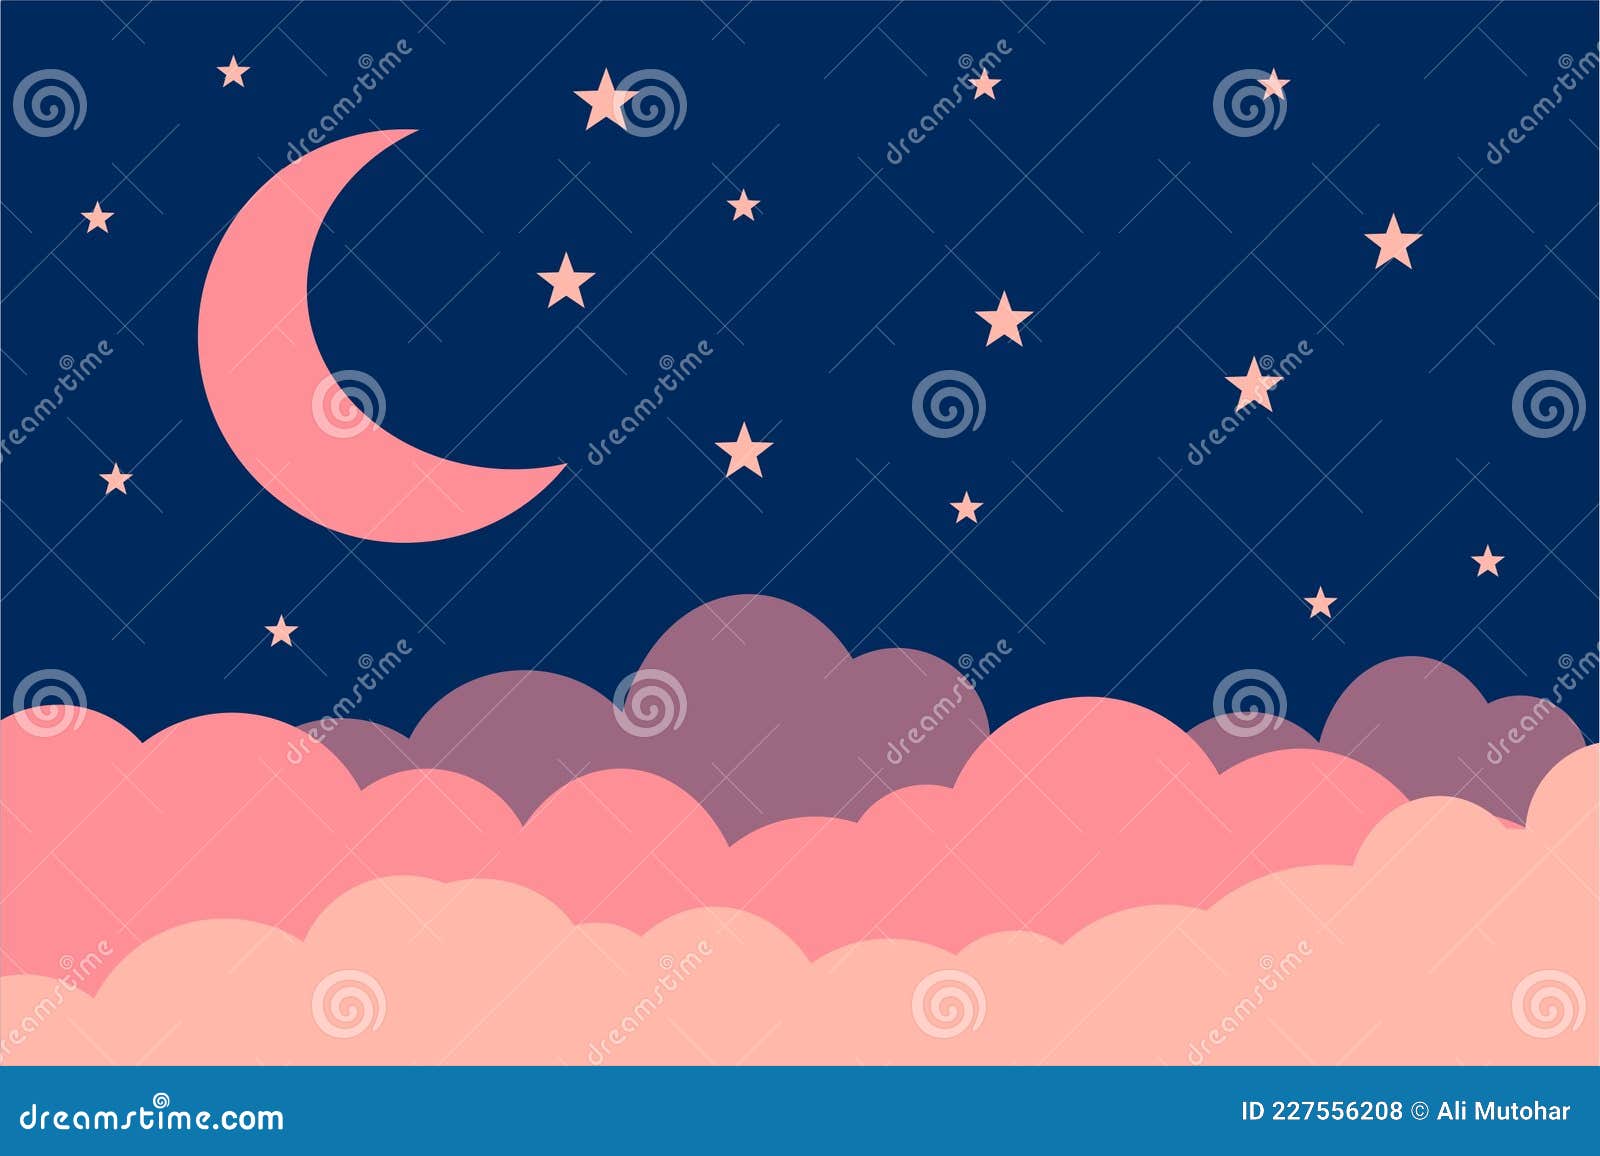 Đừng bỏ qua cơ hội được chiêm ngưỡng nền trăng hồng hoàn mỹ. Hãy nhìn vào hình ảnh này nếu bạn muốn khám phá cảm giác ngọt ngào và lãng mạn của bầu trời đêm. Cùng với màu hồng nhạt quyến rũ, ánh sáng trăng phản chiếu trên mặt hồ tạo ra một hình ảnh thật hoàn hảo và lý tưởng để thư giãn.